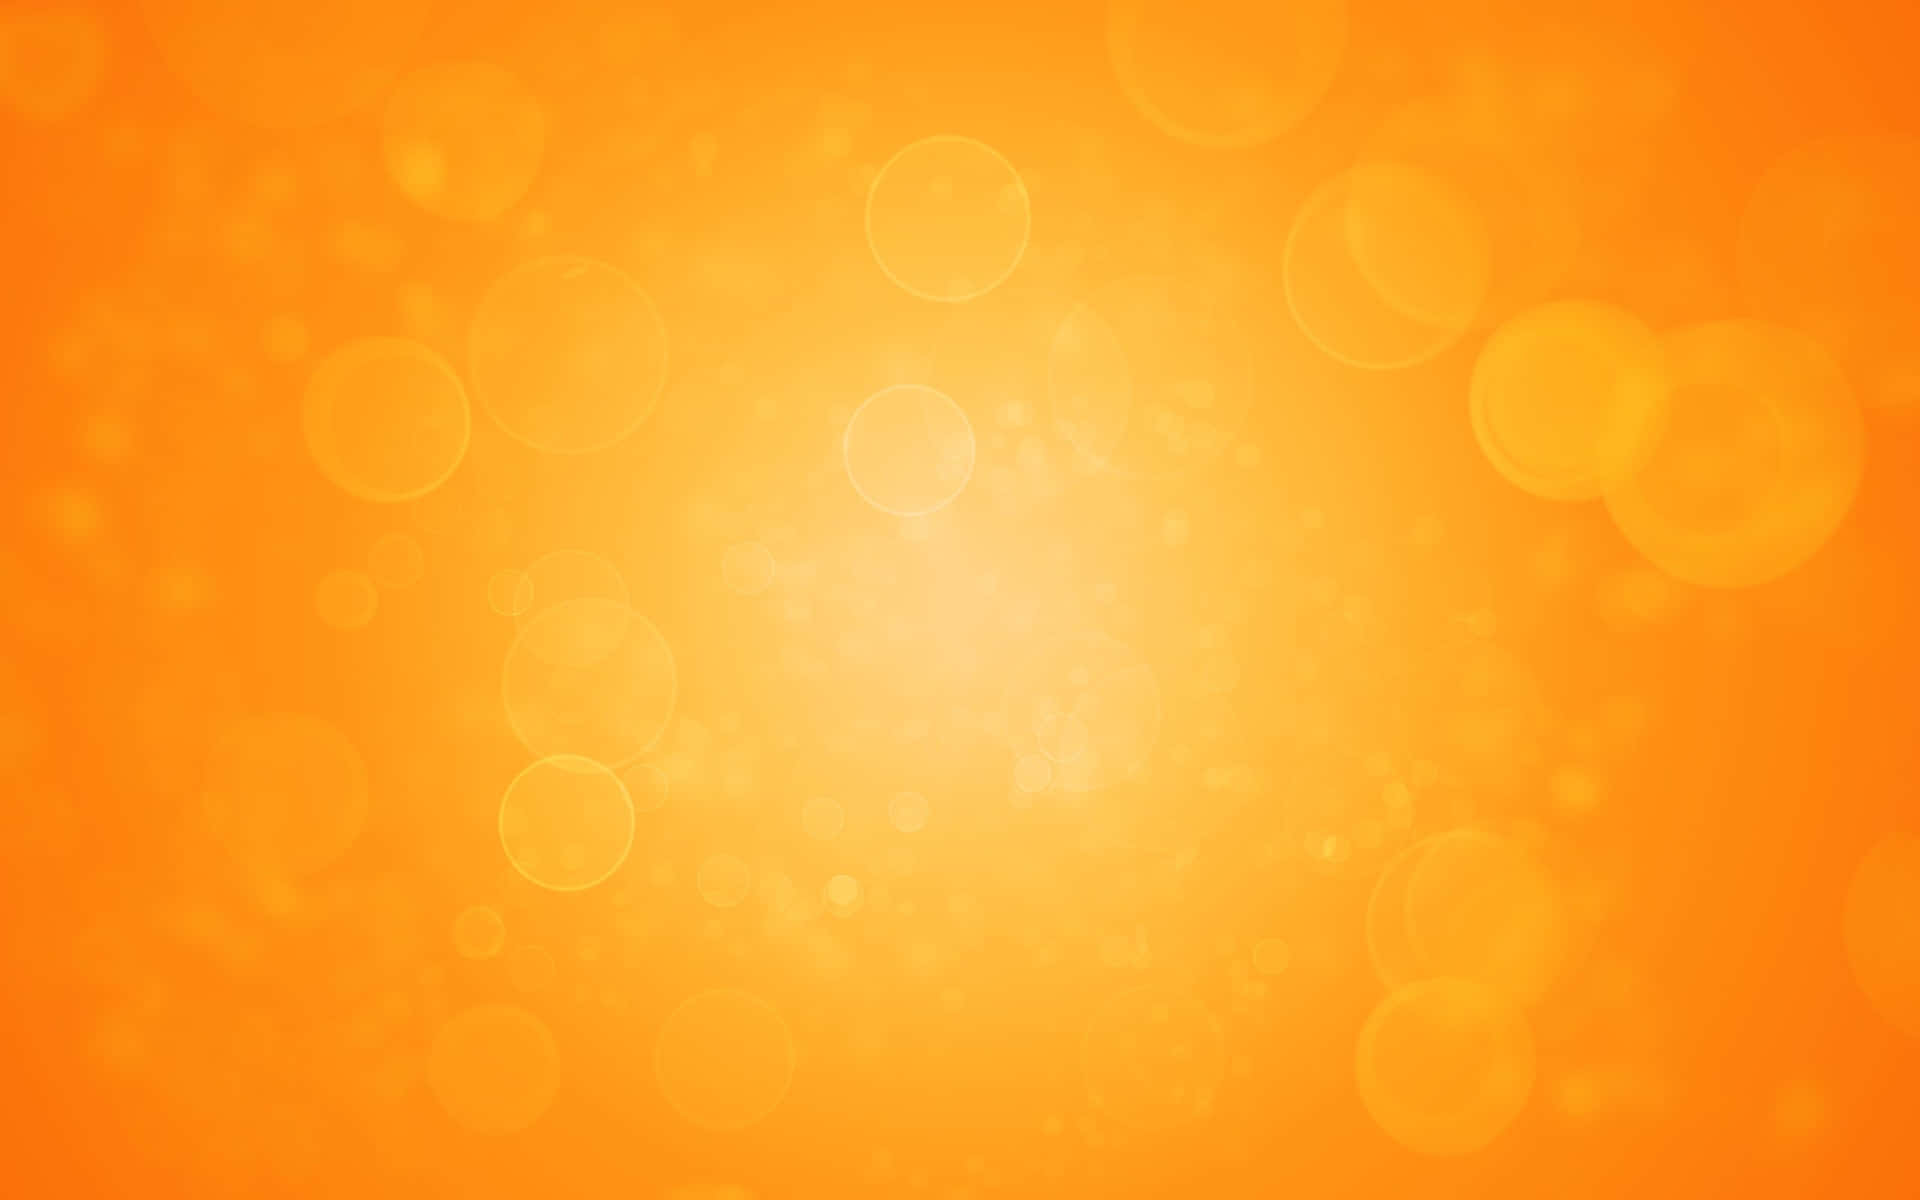 Vibrant Orange and Yellow Gradient Background